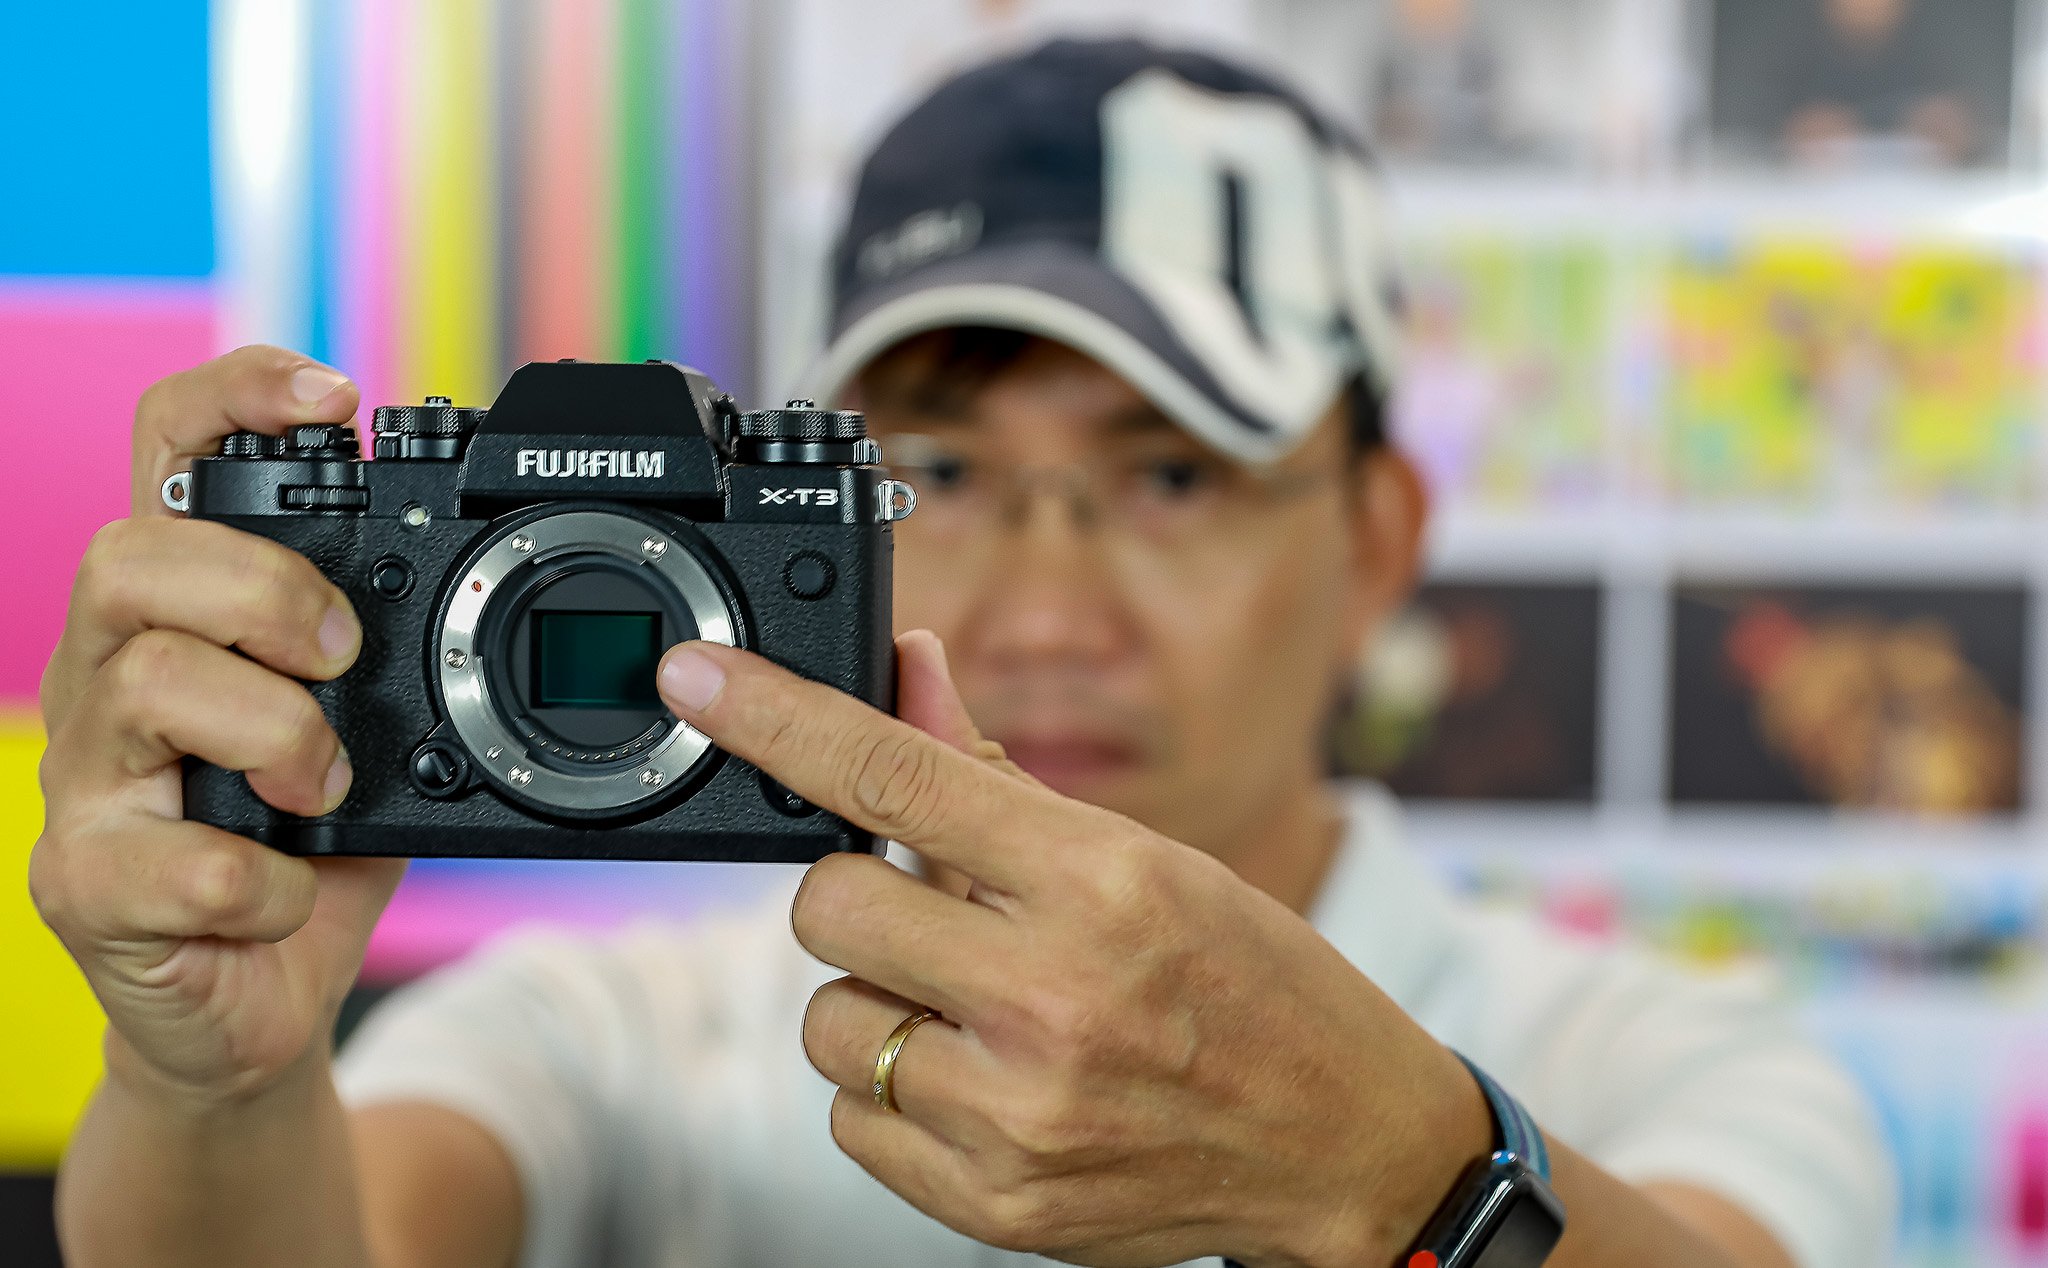 Trên tay máy ảnh Fujifilm X-T3: Thân máy như X-T2 với nhiều nâng cấp công nghệ